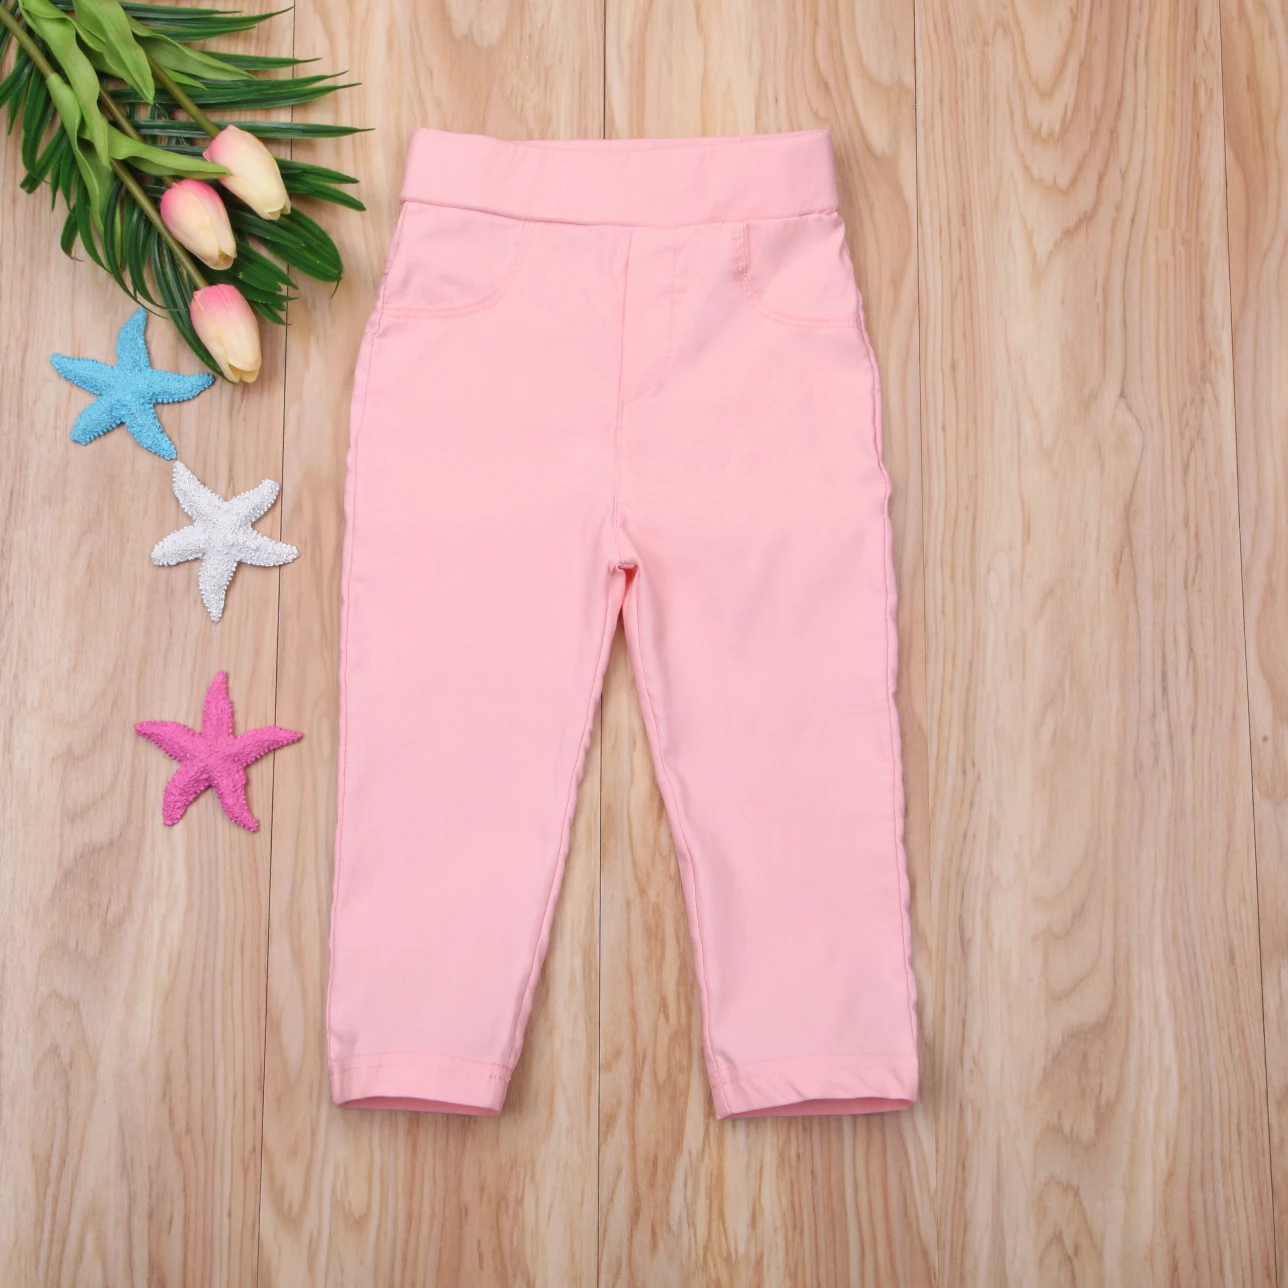 Emmaaby/детские длинные штаны детские узкие Стрейчевые хлопковые брюки для маленьких мальчиков и девочек брюки-слаксы, 5 цветов, От 1 до 6 лет - Цвет: Розовый